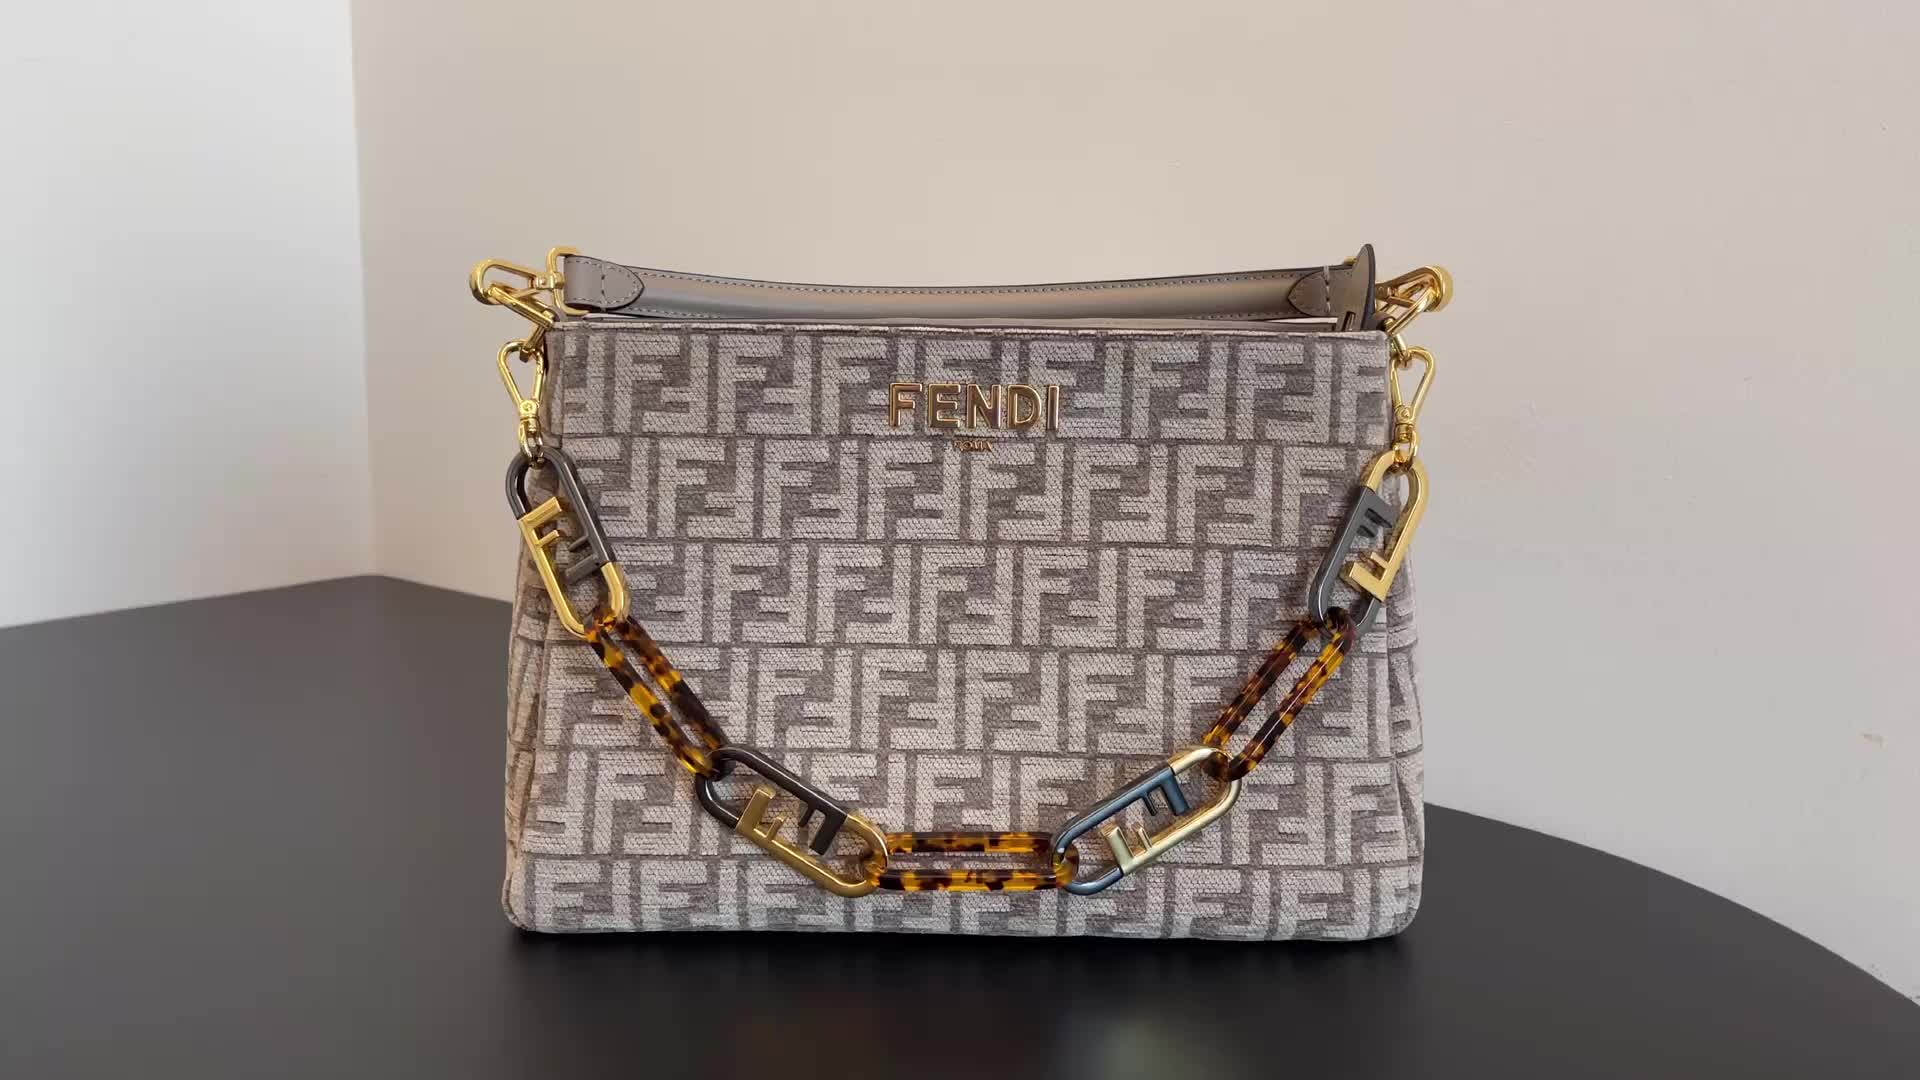 Handbag-Fendi Bag(4A) Code: ZB7786 $: 99USD